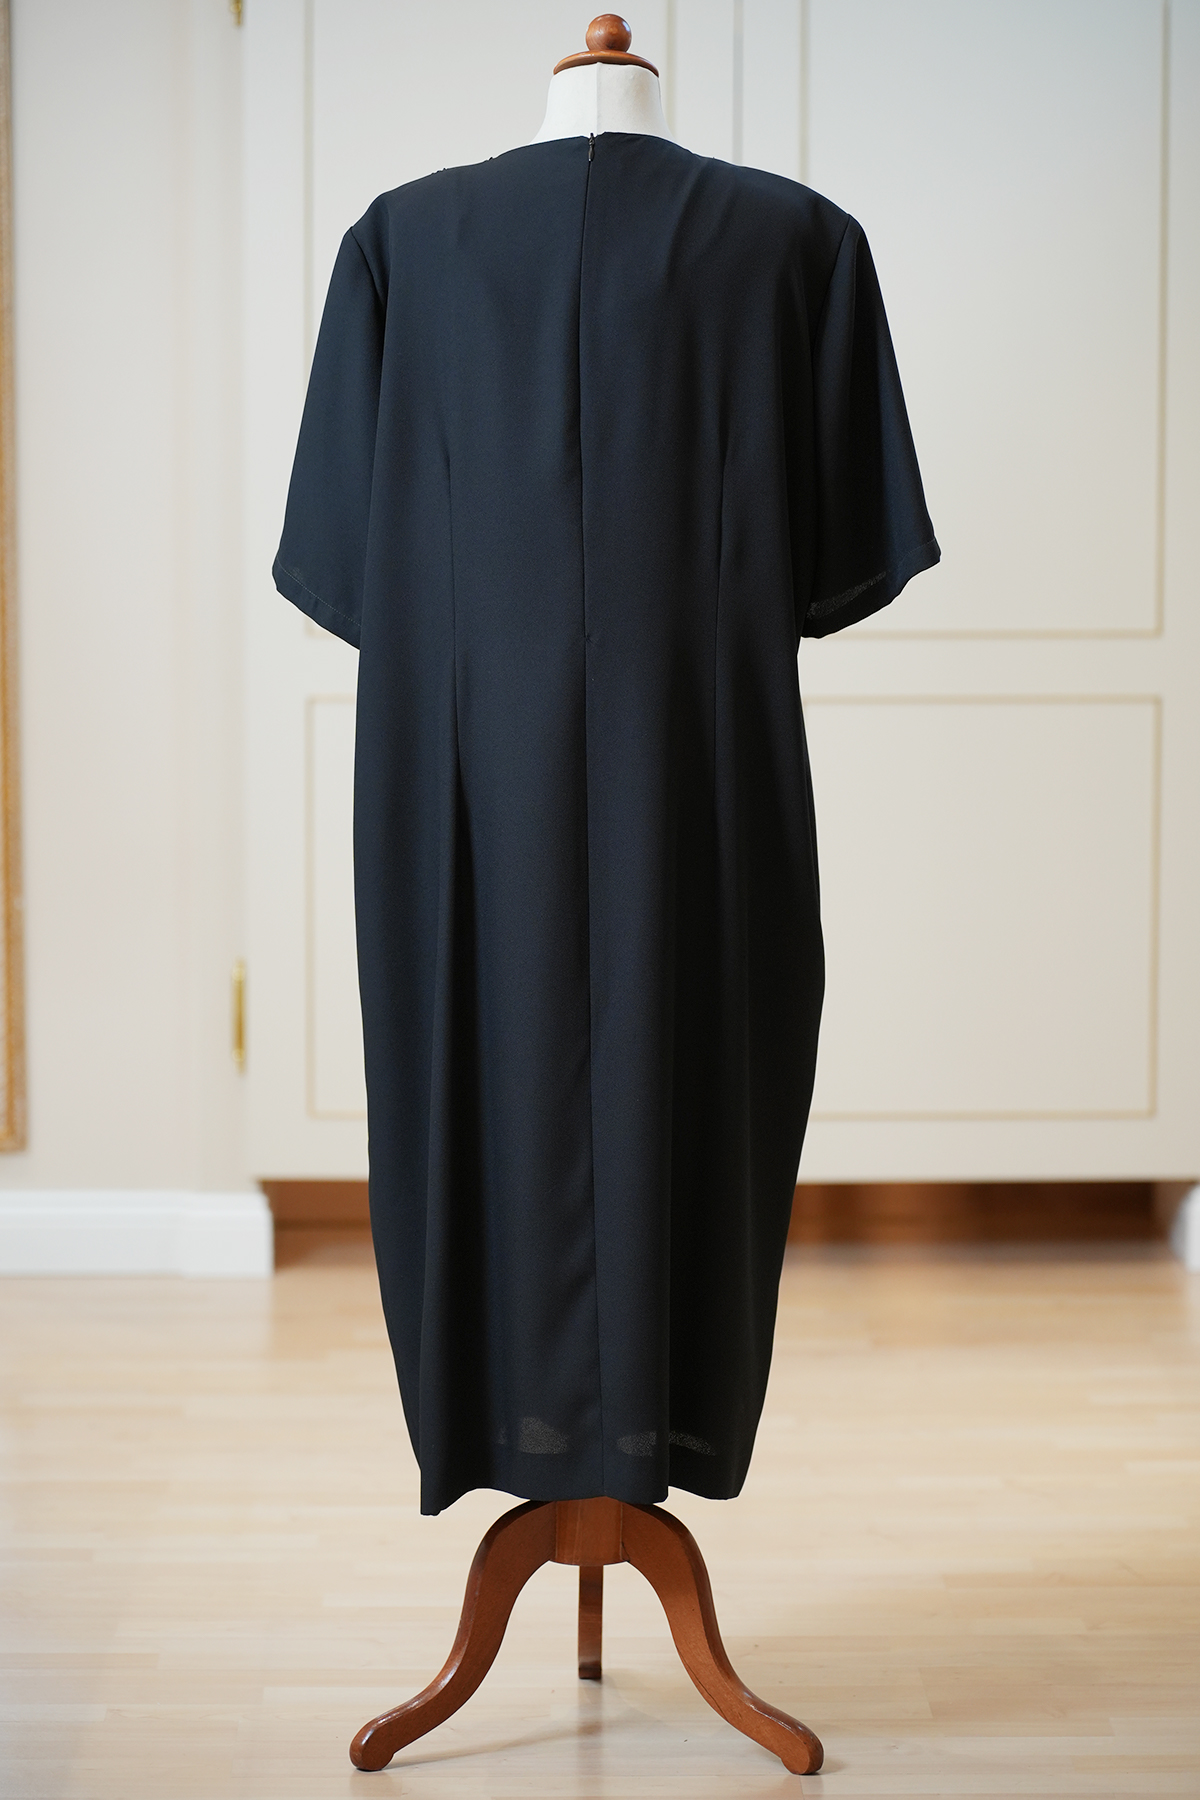 ELLA SINGH PERLE – Abendkleid – schwarz - Gr. 46 – neuwertig